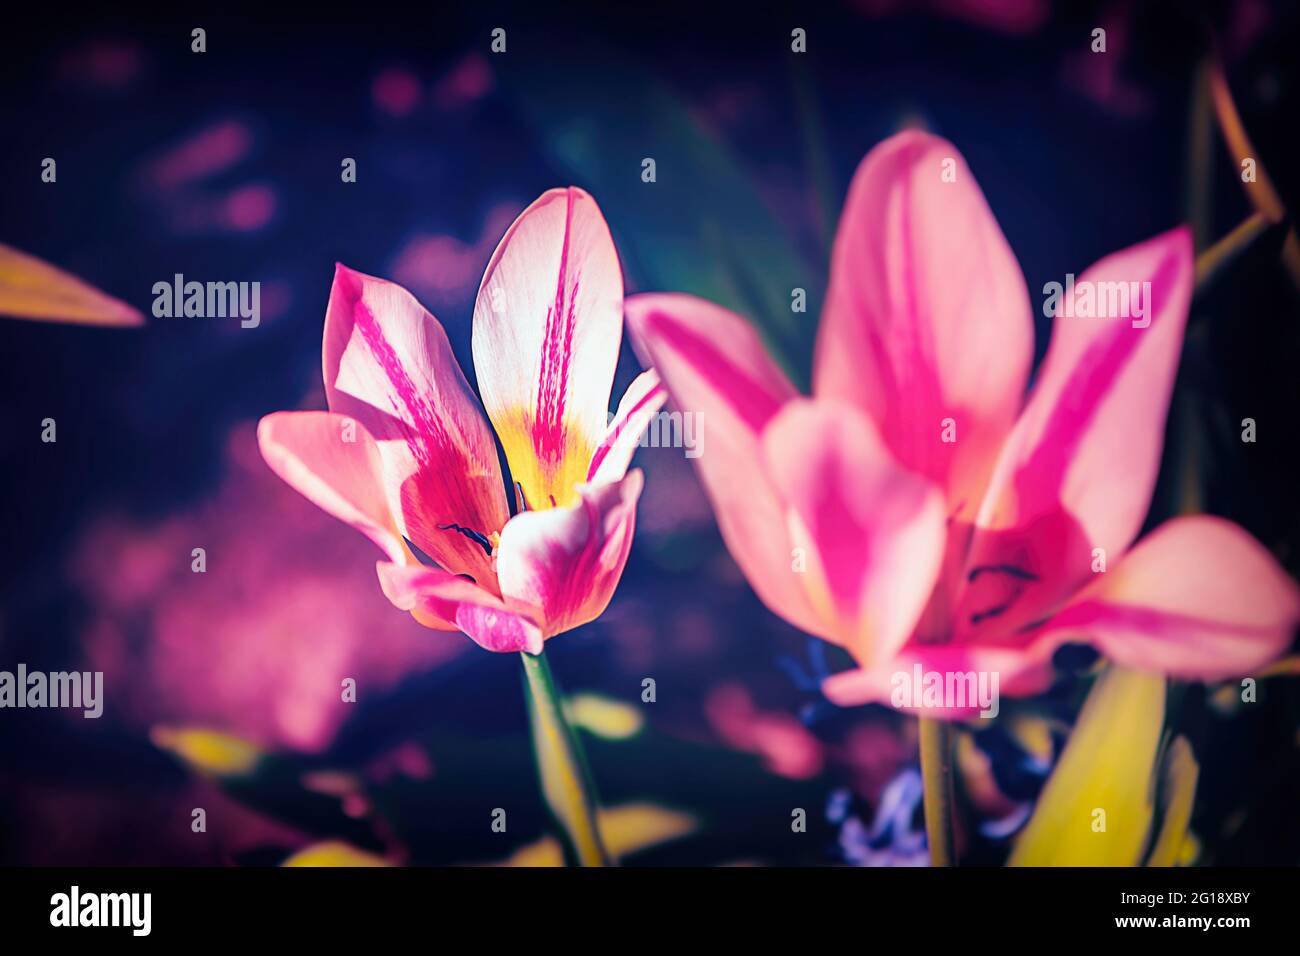 Stimmungsvolles Nahaufnahme einer Tulpe im farbenfrohes Blumenmeer aus Tulpen im Grugapark Essen - Blüten im Licht und Sonnenschein im Park. Stock Photo